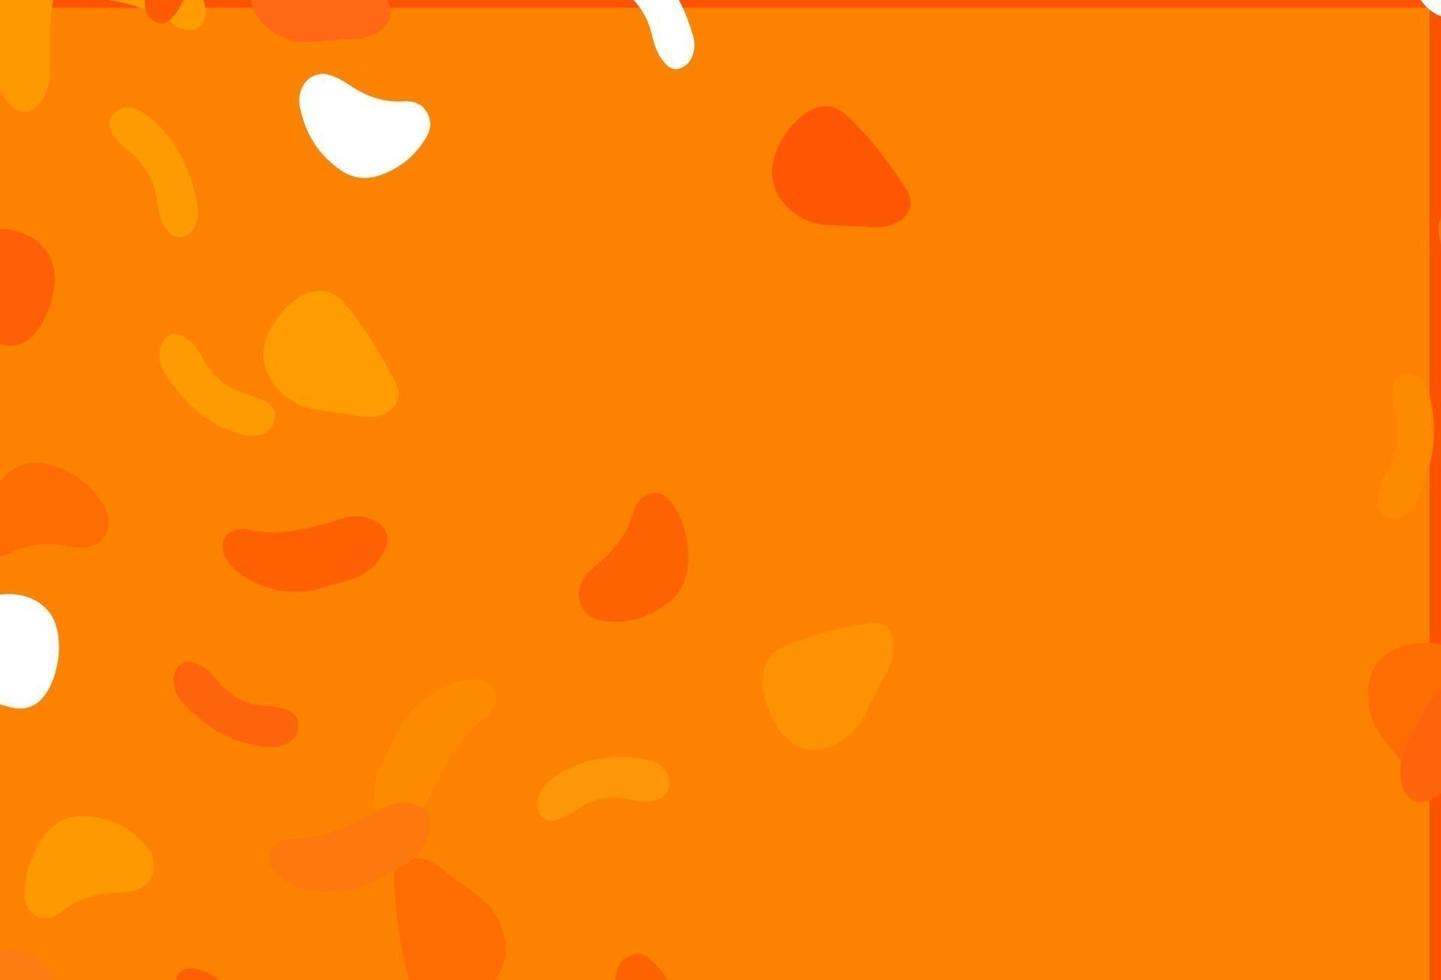 sfondo vettoriale arancione chiaro con forme astratte.